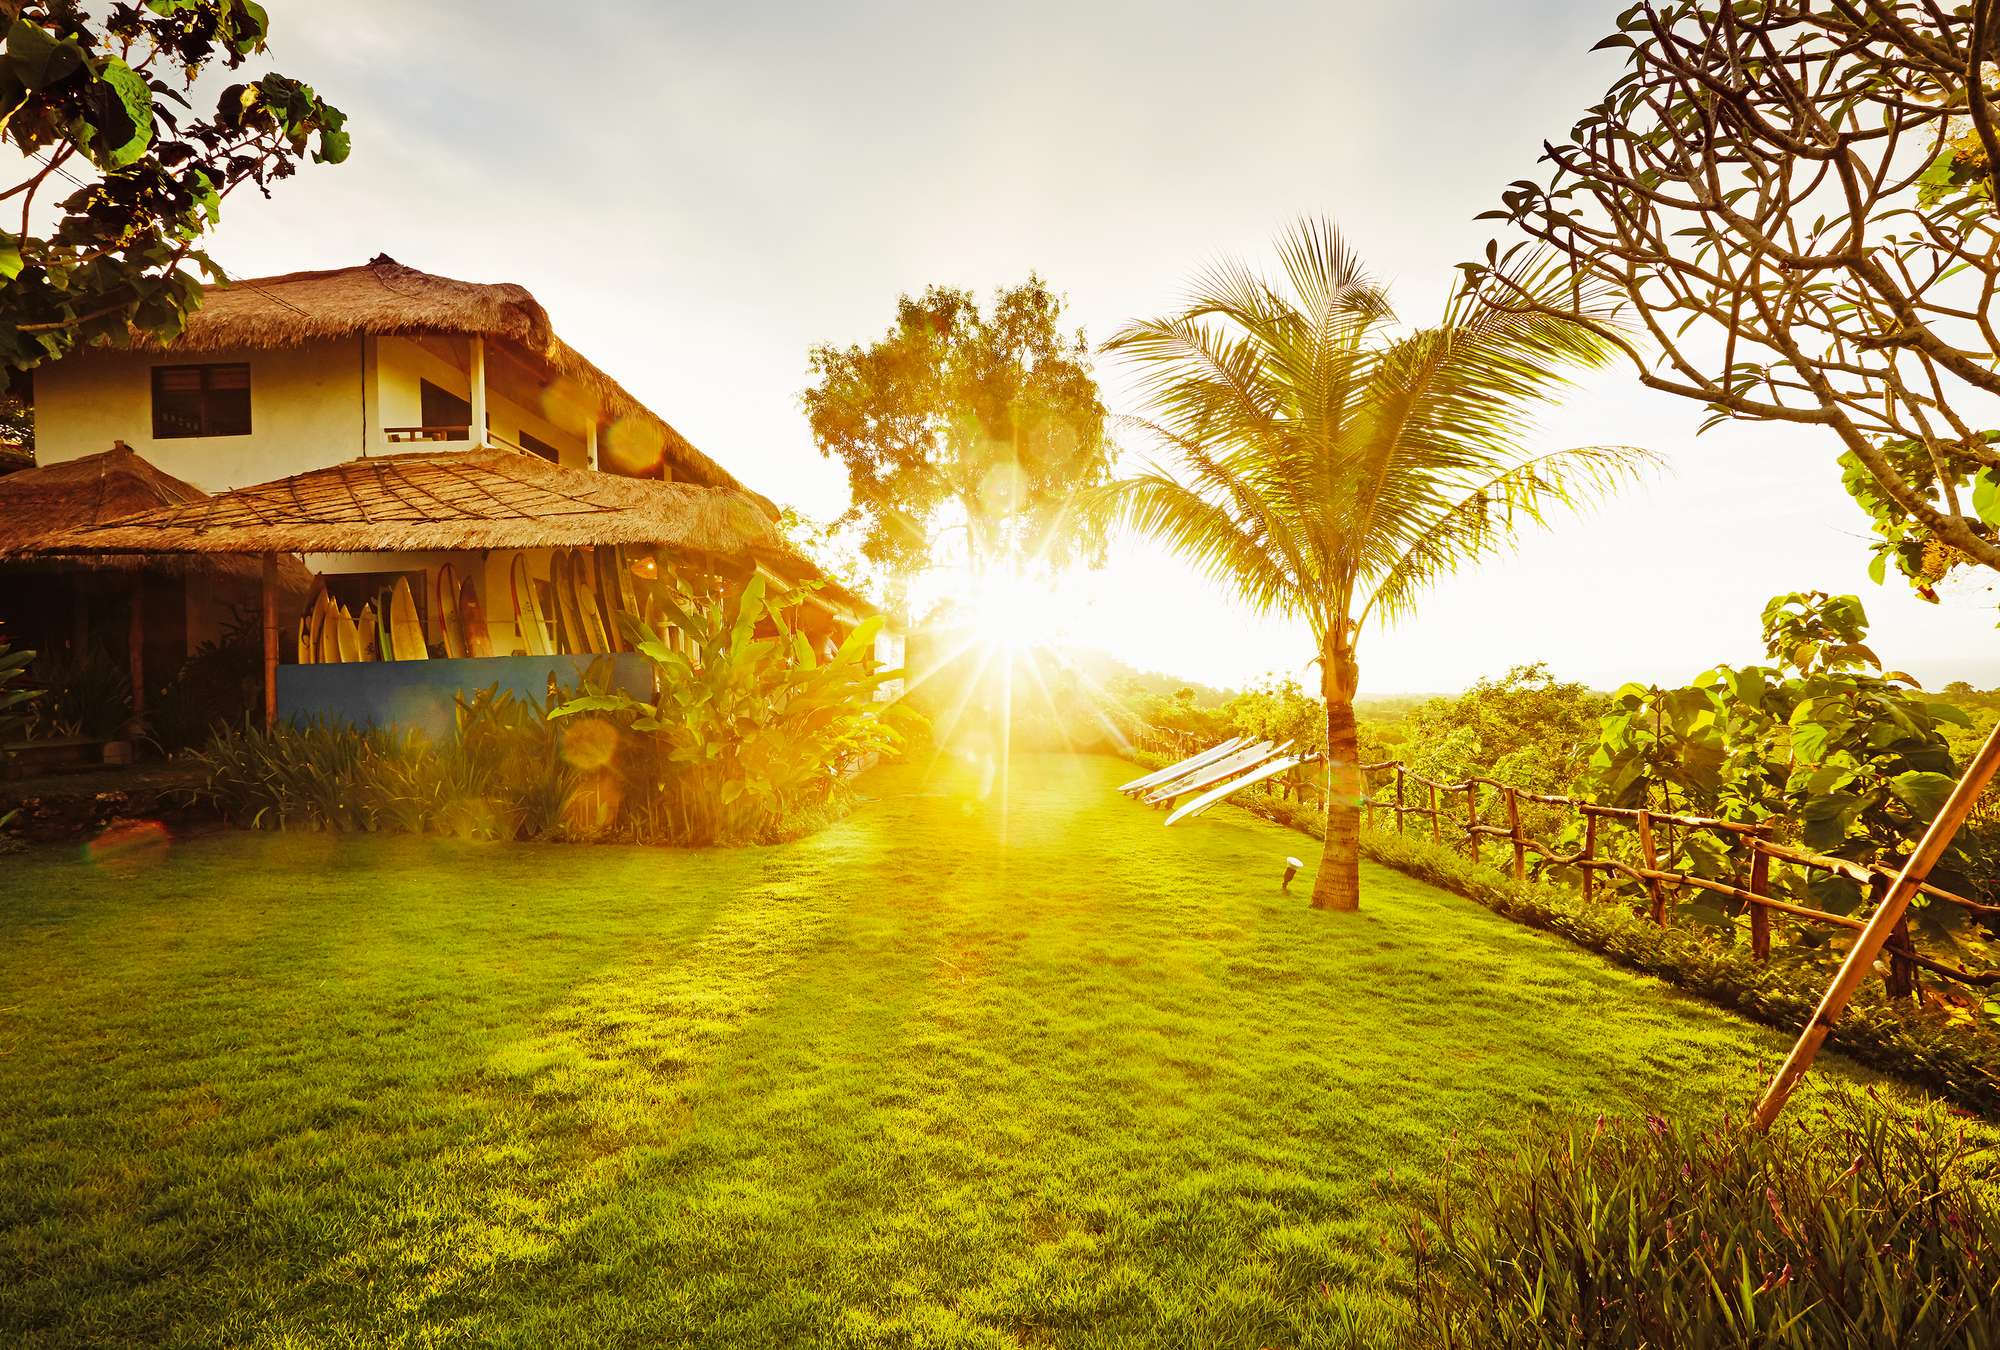             Fototapete Leben auf Bali – Blockhütte mit Palmengarten
        